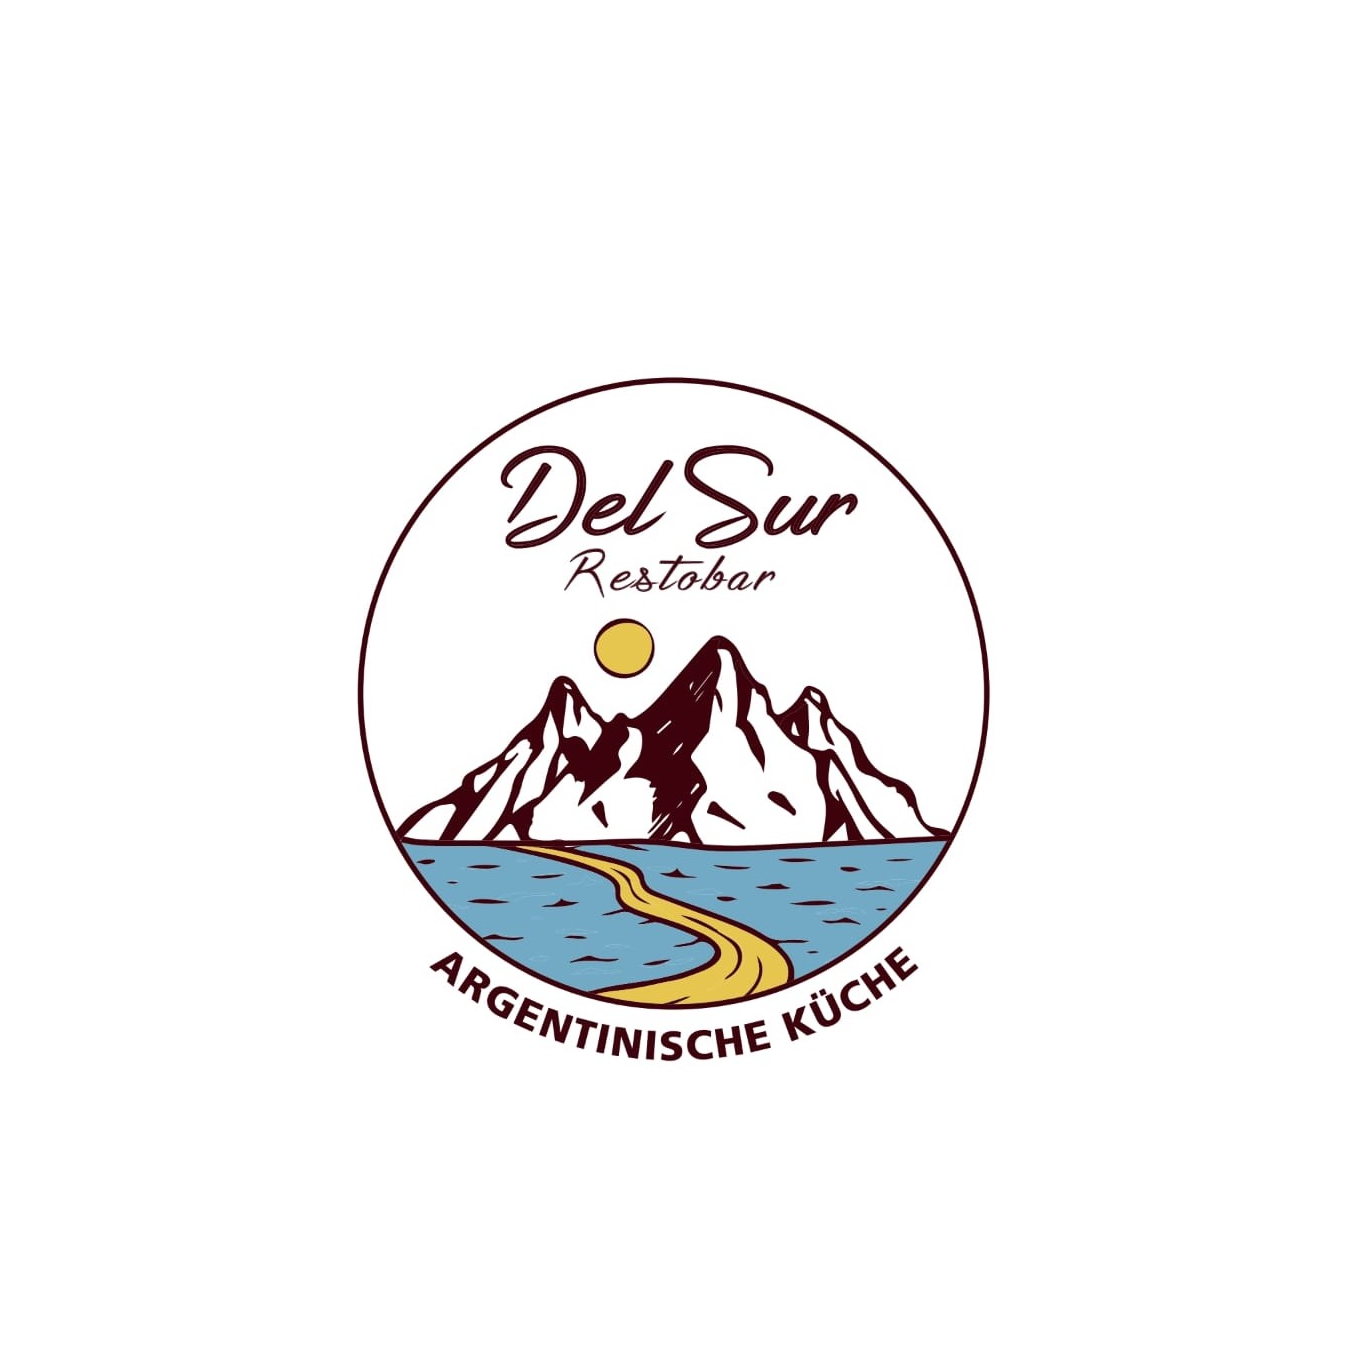 Del Sur Restobar in Dießen am Ammersee - Logo